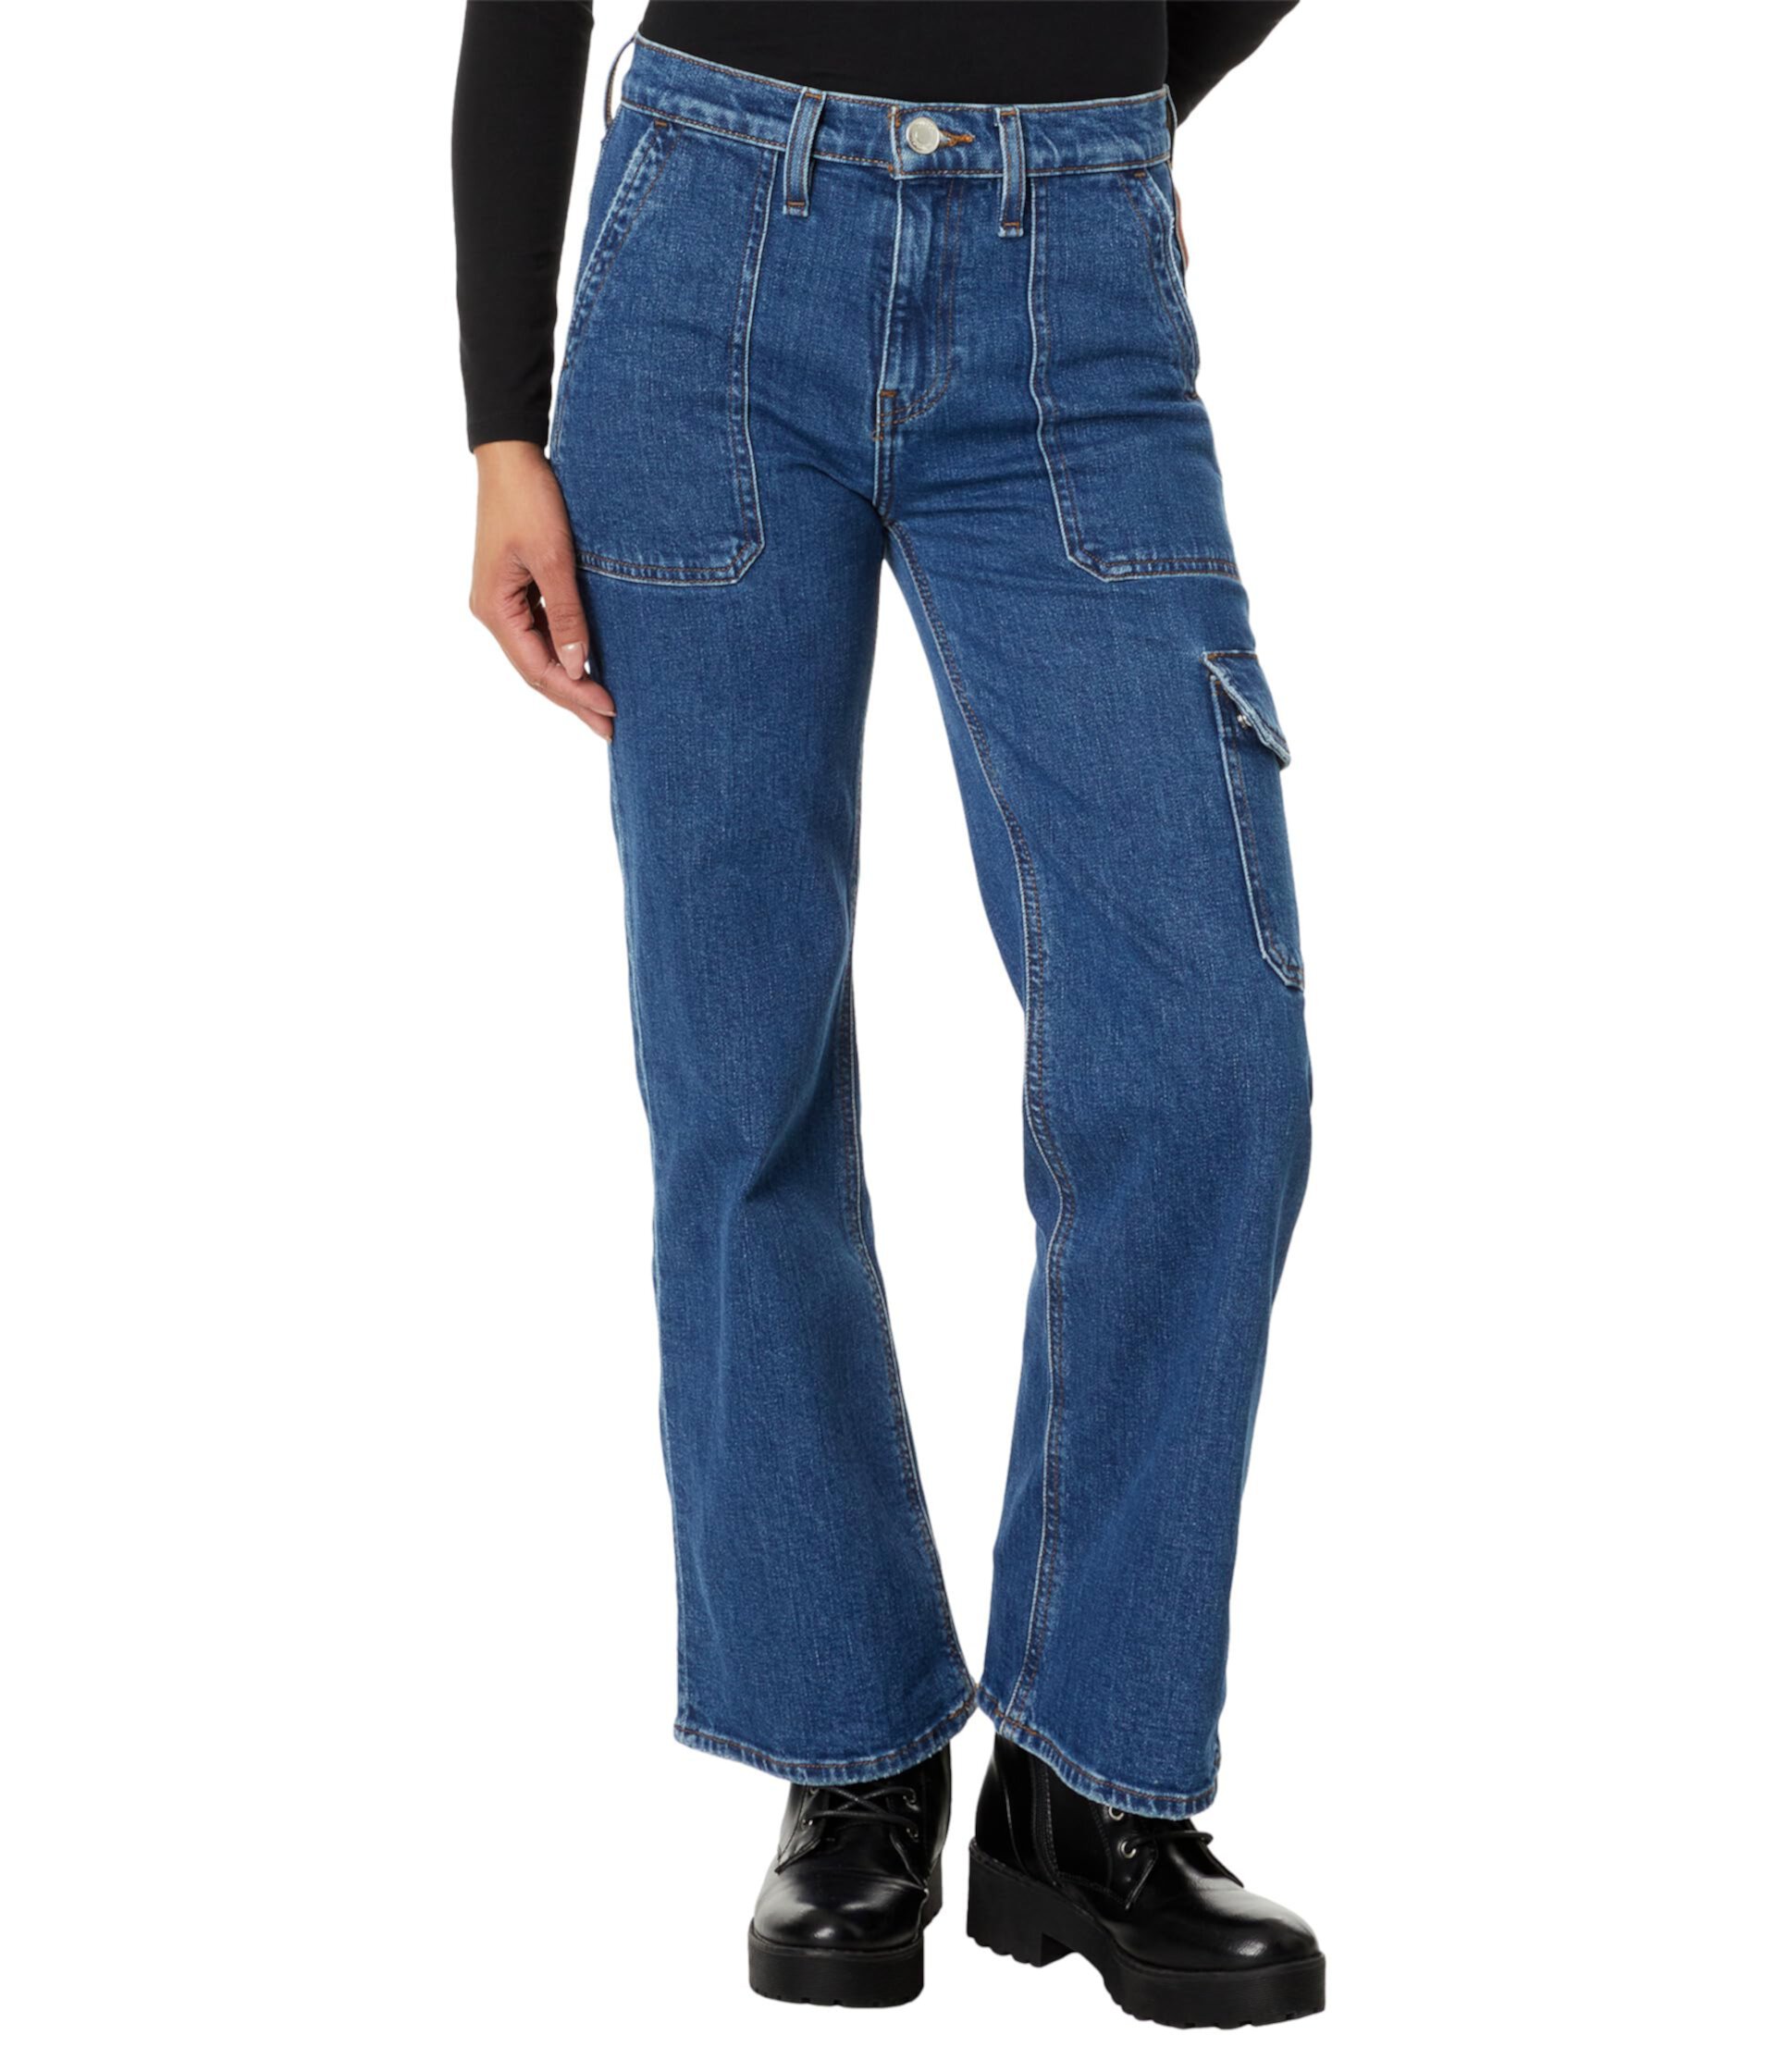 Широкие брюки-карго Rosie High Rise в цвете Wintertide Hudson Jeans